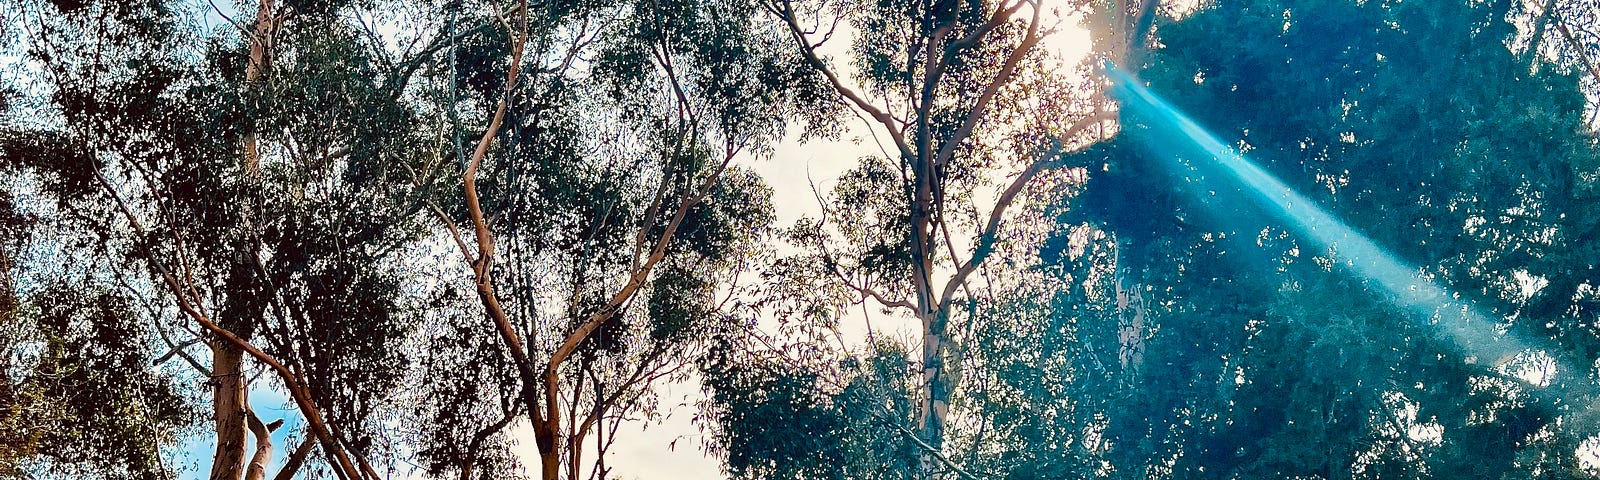 Sun shining through Eucalyptus trees in Santa Monica Mountains